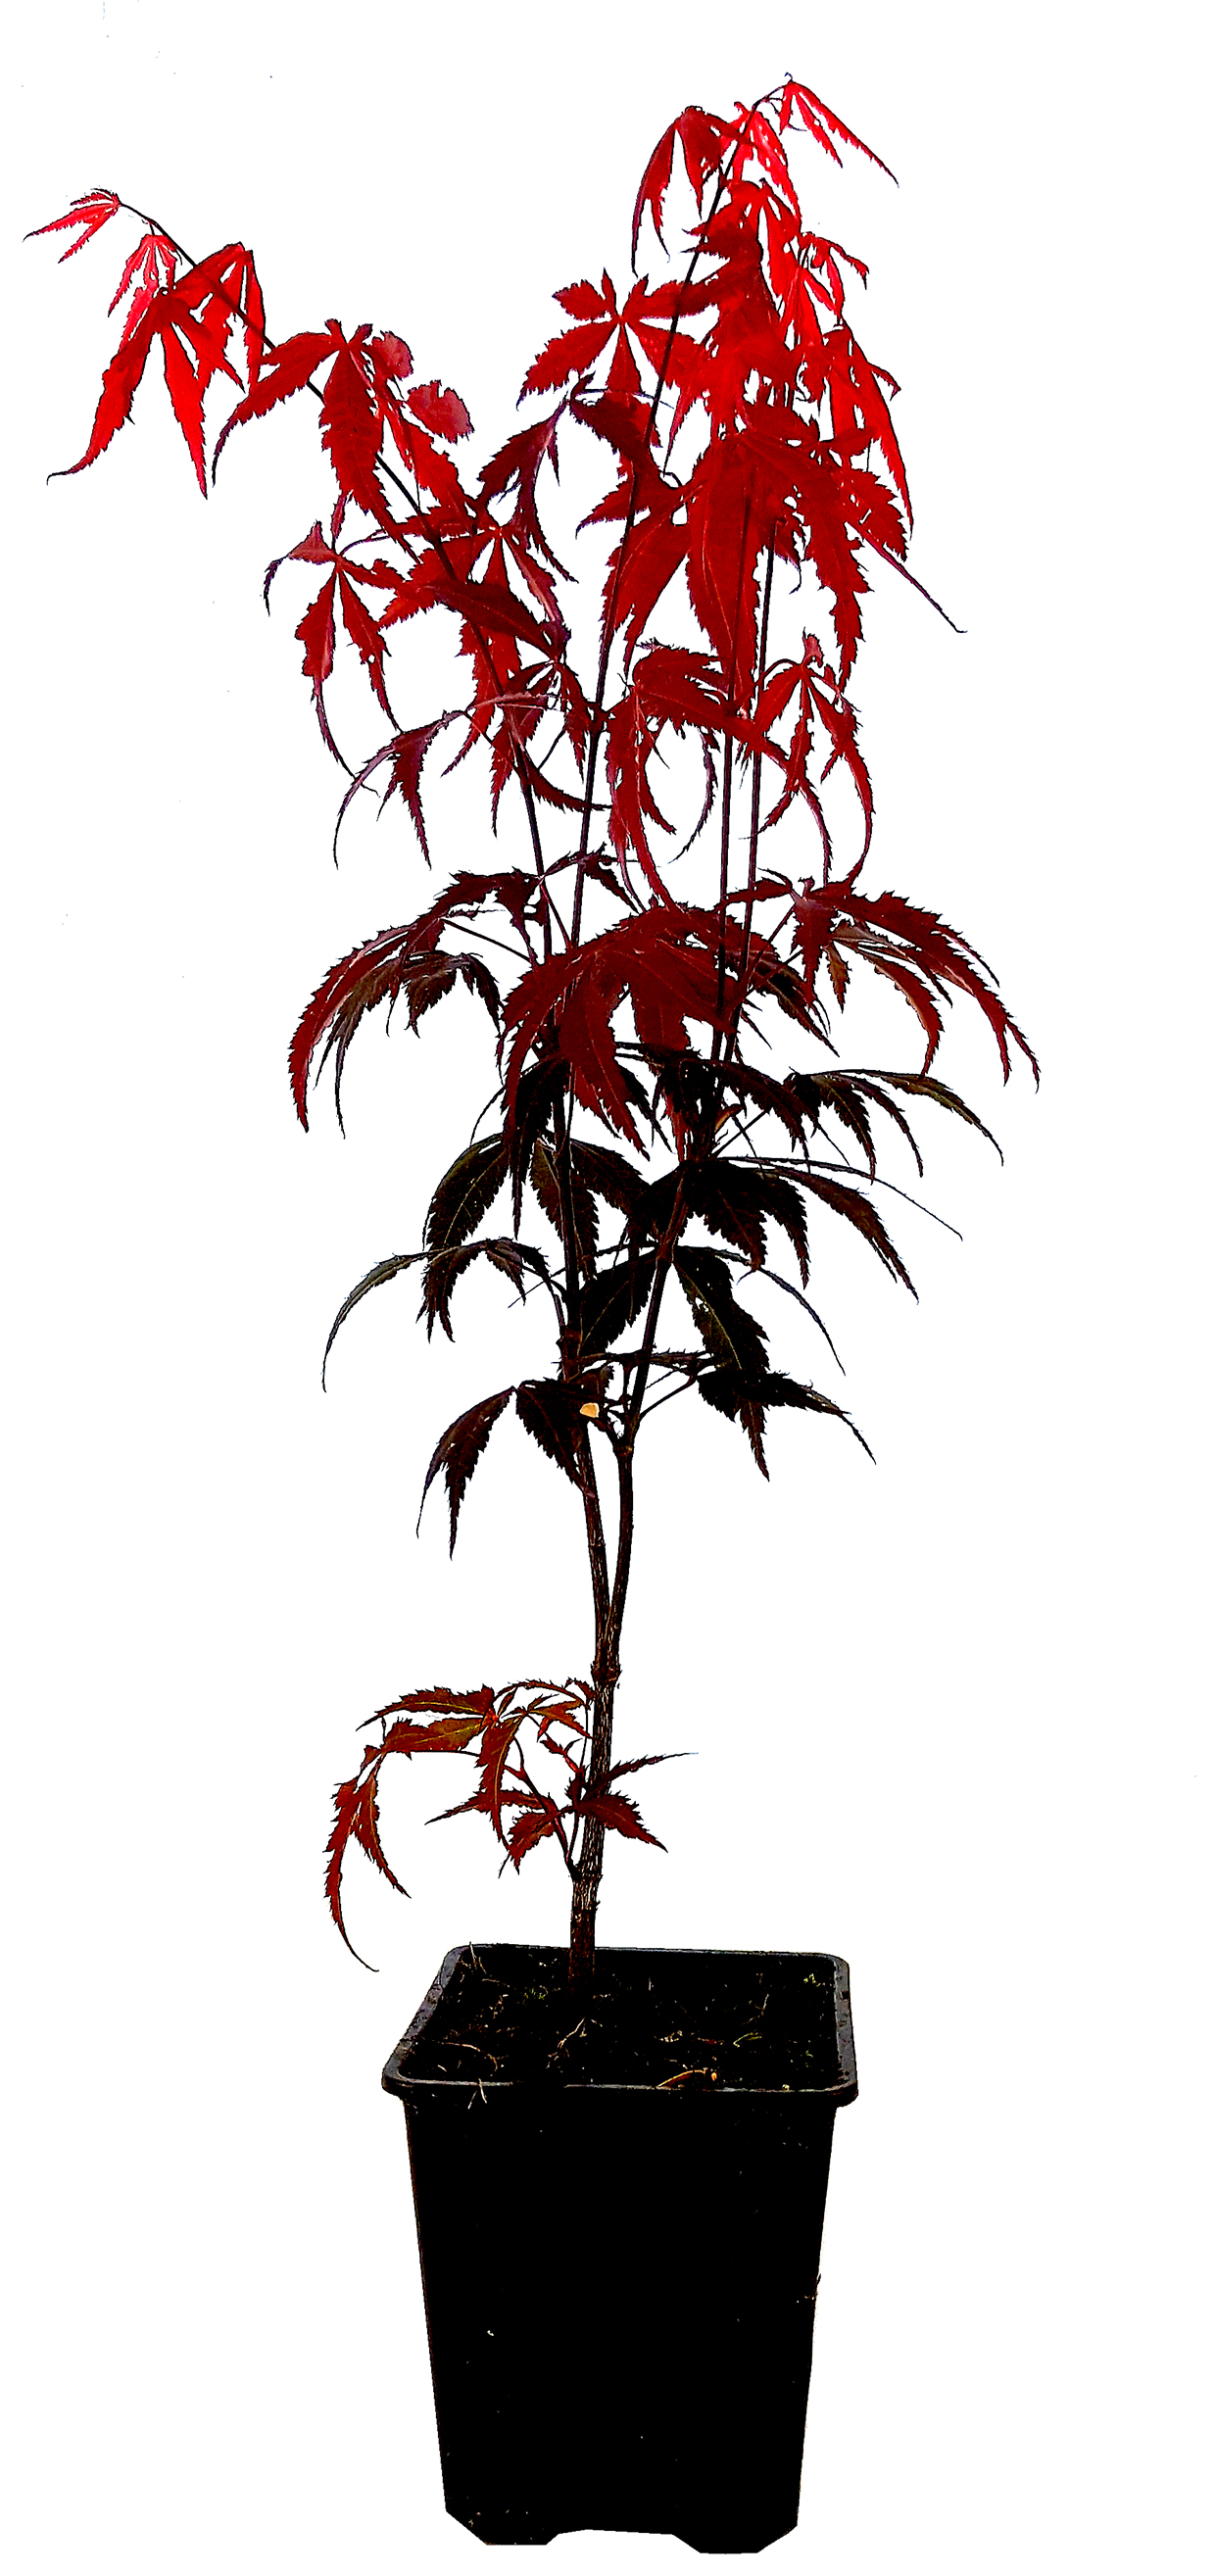 Seedeo® Roter Fächerahorn  (Acer palmatum atropurpureum) ca. 40 cm - 50 cm hoch